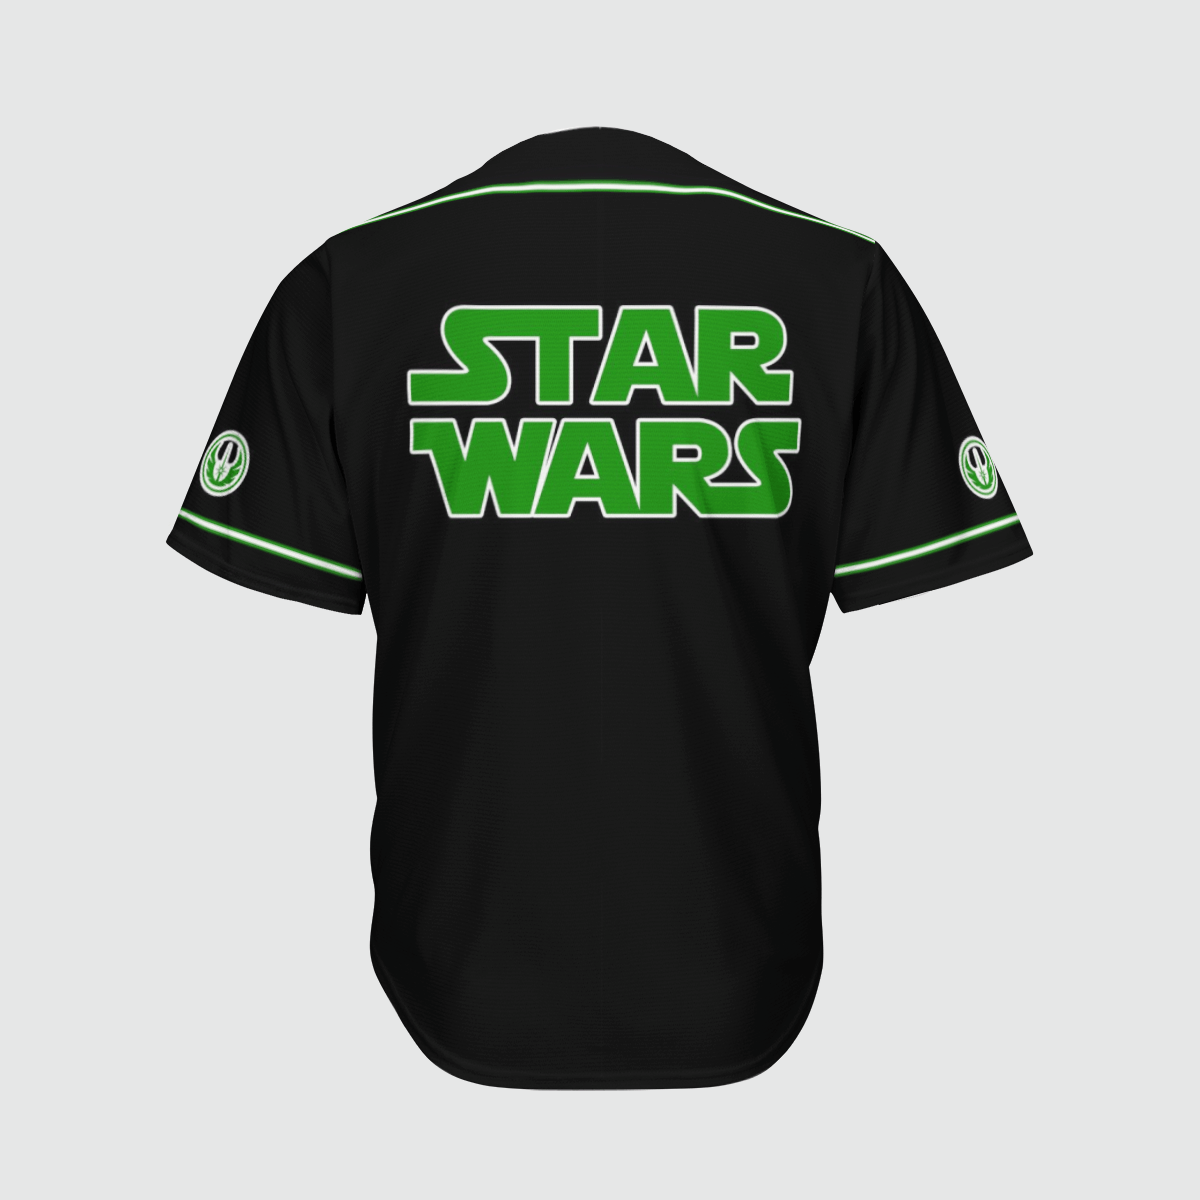 Yoda Star Wars baseball shirt 1